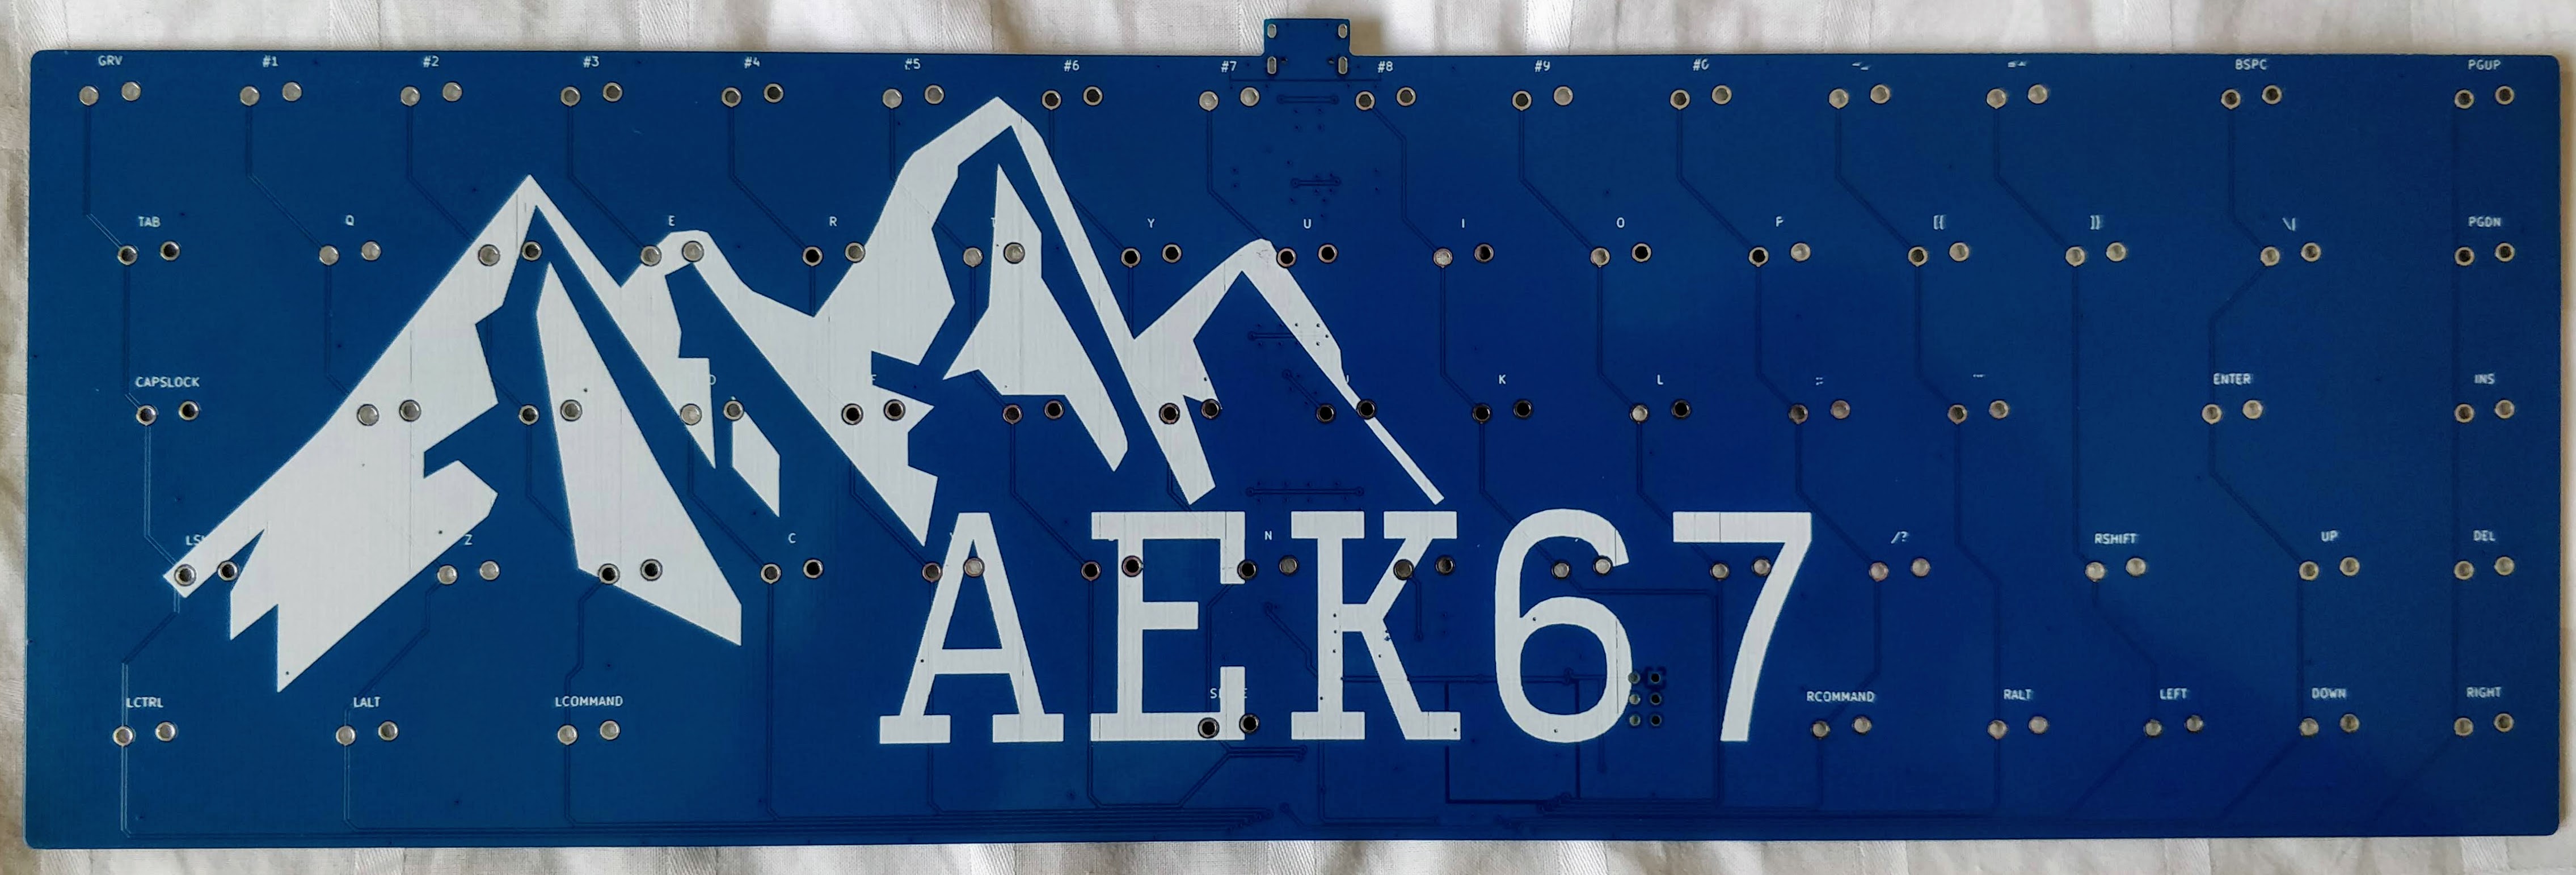 AEK67 front PCB